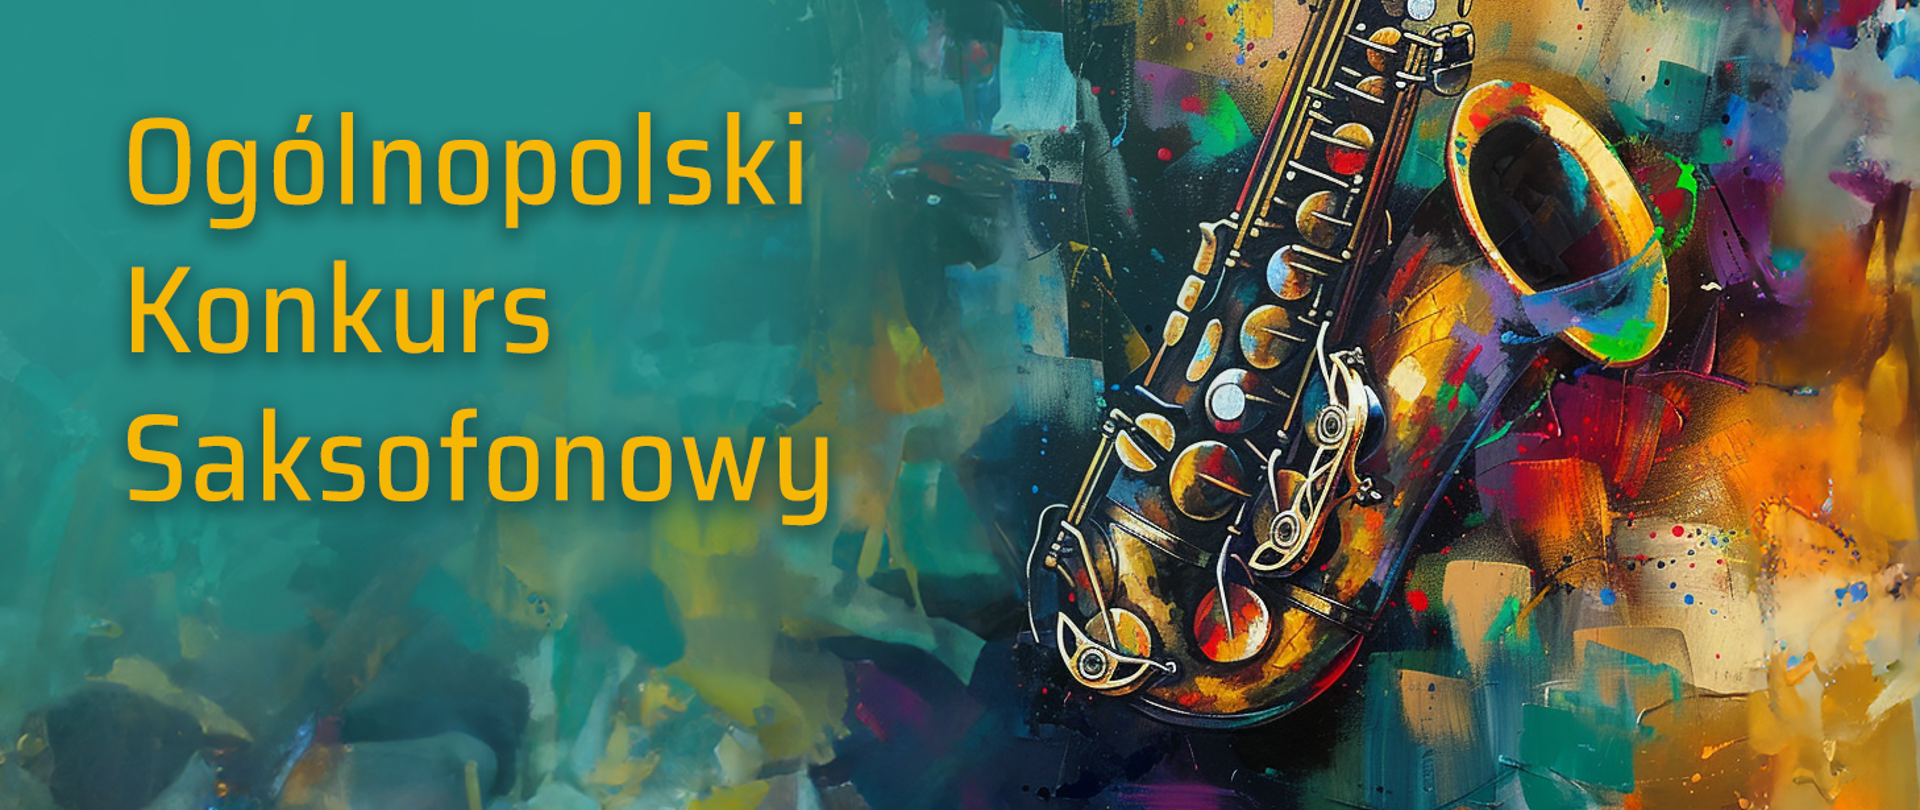 na kolorowym tle kawałek saksofonu i napis w żółtym kolorze Ogólnopolski konkurs saksofonowy